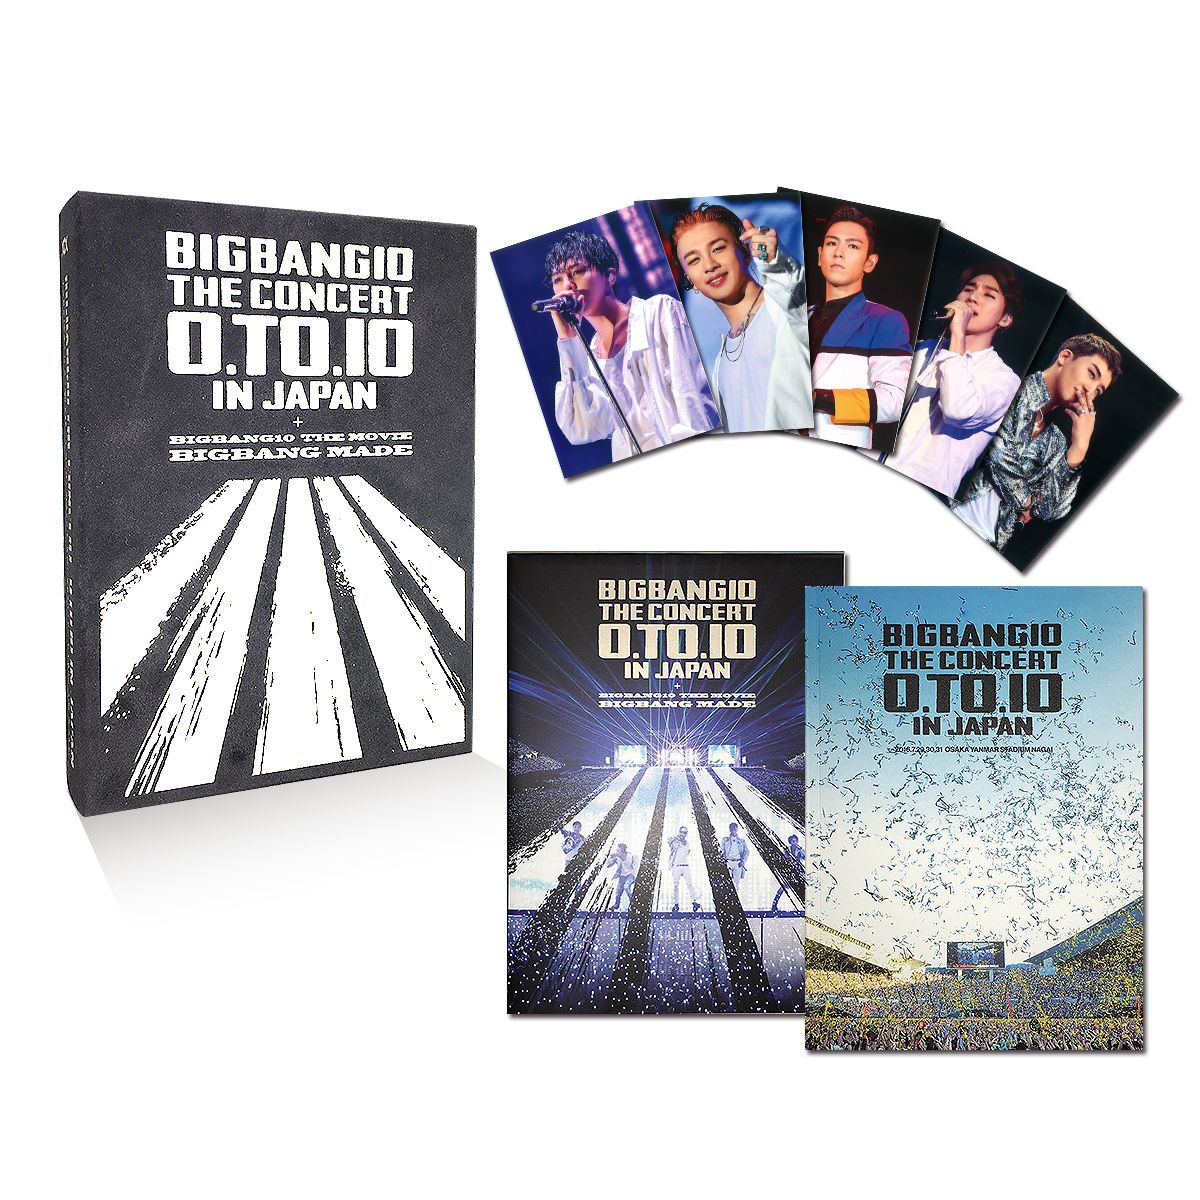 楽天ブックス: BIGBANG10 THE CONCERT : 0.TO.10 IN JAPAN + BIGBANG10 THE MOVIE  BIGBANG MADE[DVD(4枚組)+LIVE CD(2枚組)+PHOTO BOOK+スマプラムービーミュージック] -DELUXE  EDITION-(初回生産限定) - BIGBANG - 4988064584277 : DVD